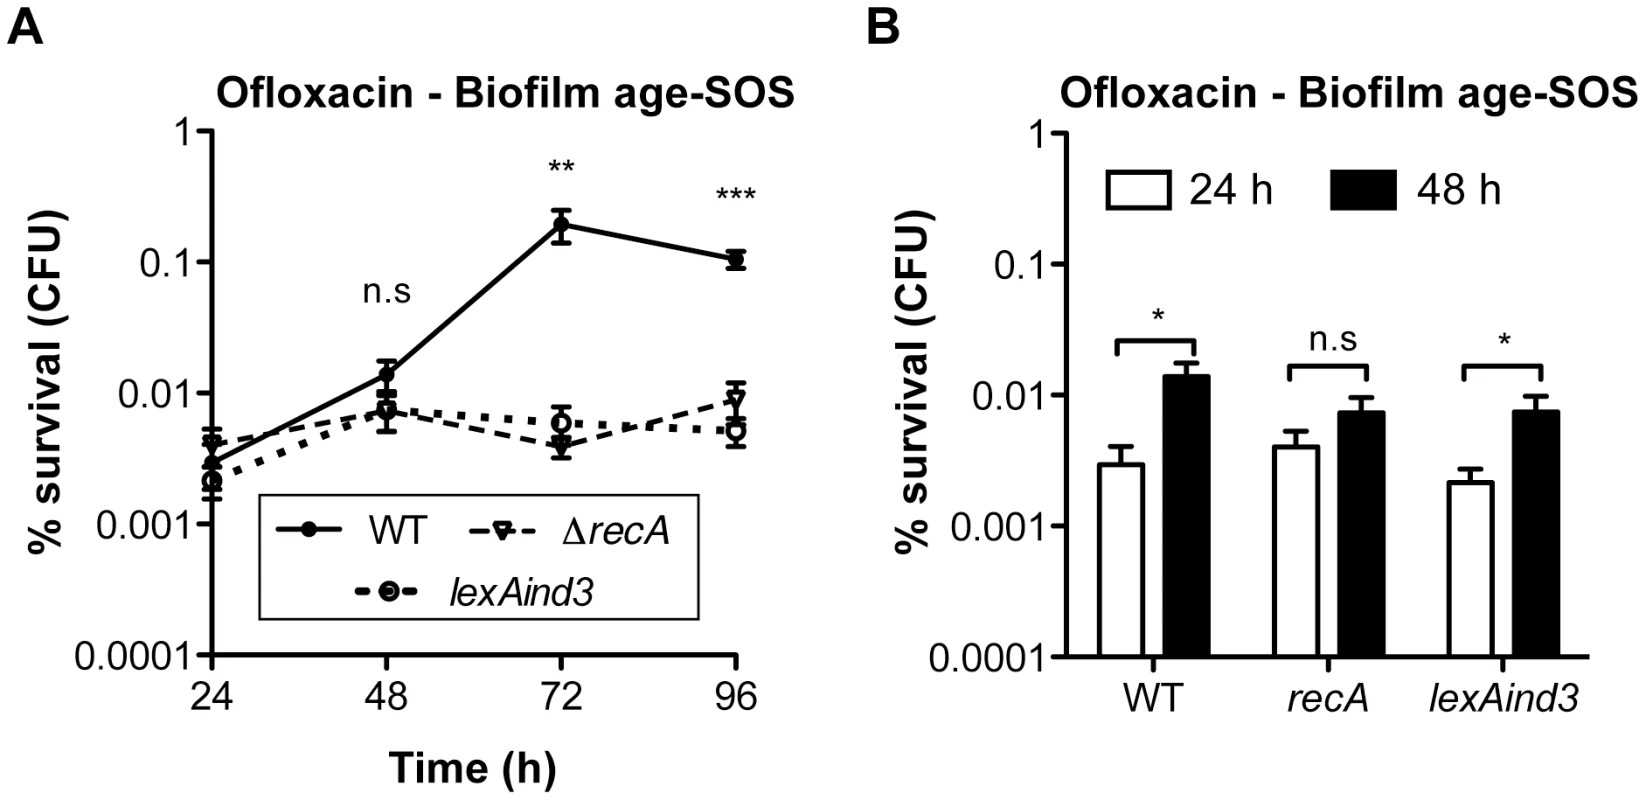 Ofloxacin tolerance in aging biofilms is SOS-response-dependent.